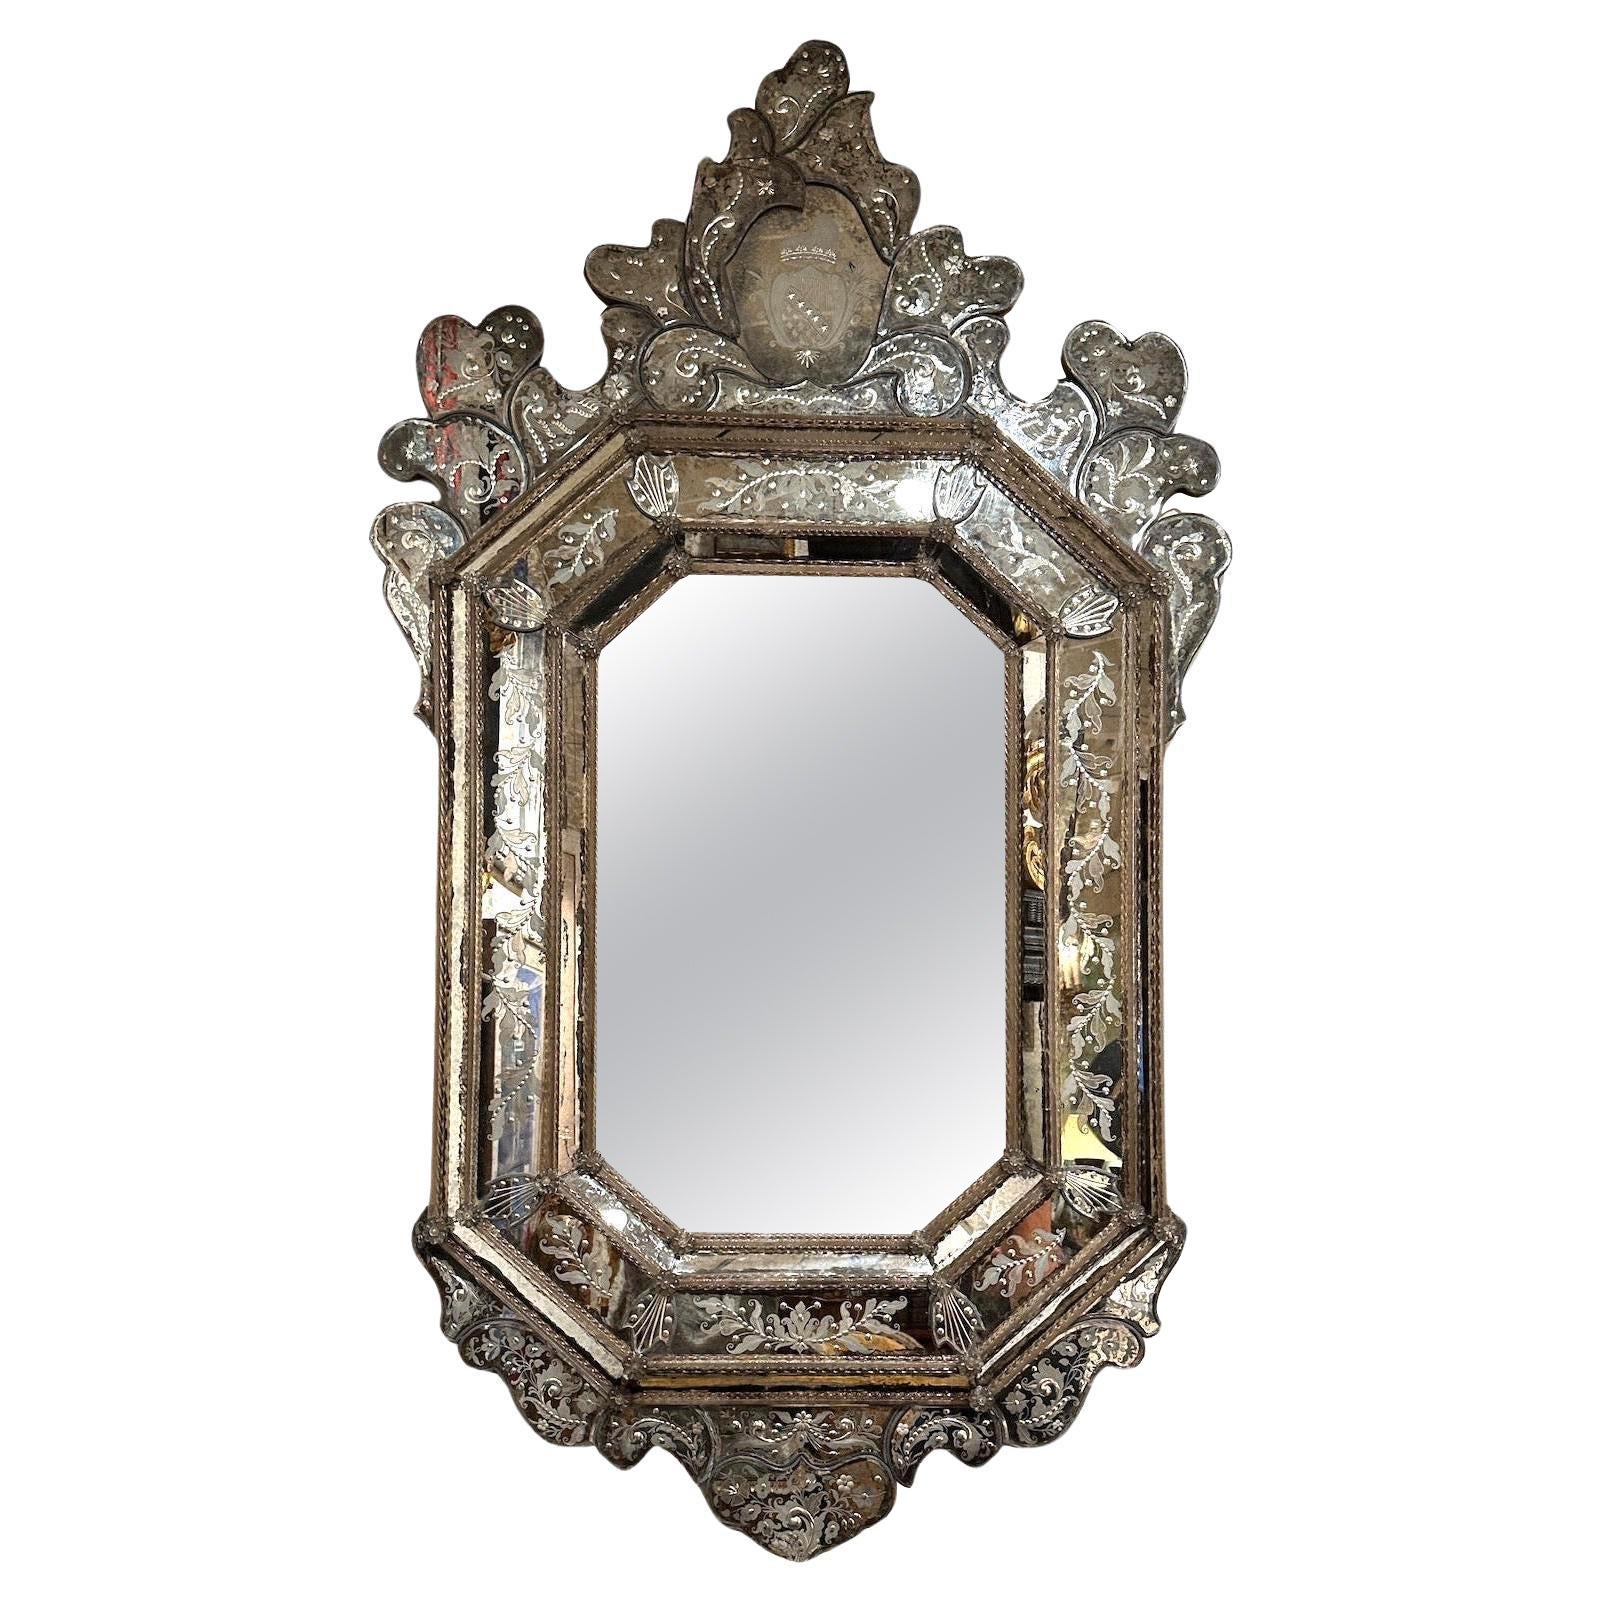 How do you repair an antique Venetian mirror?